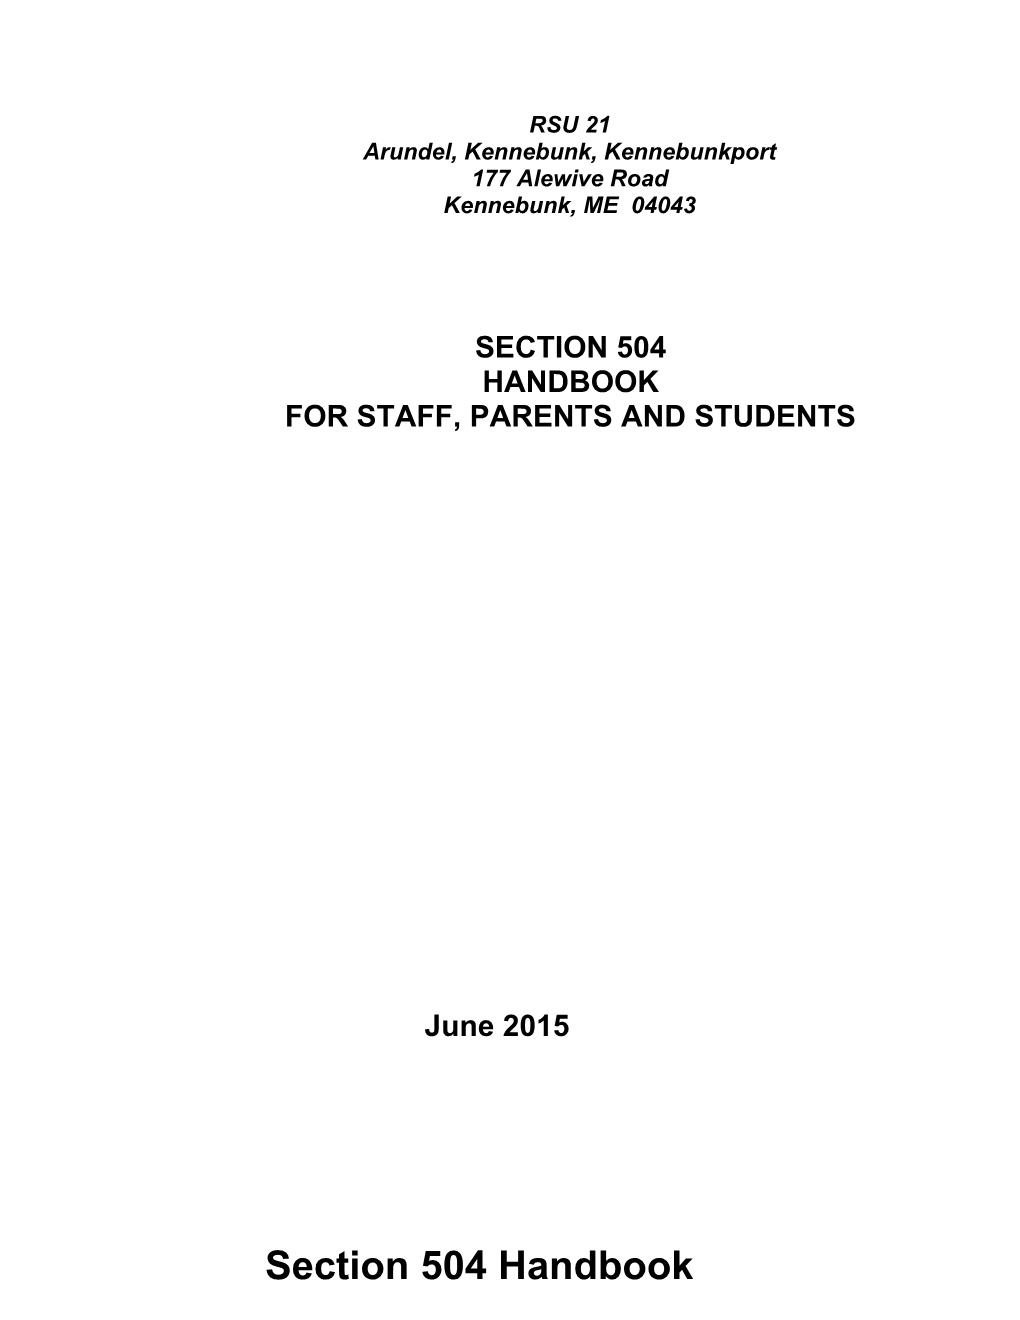 Section 504 Policies and Procedur4es Handbook